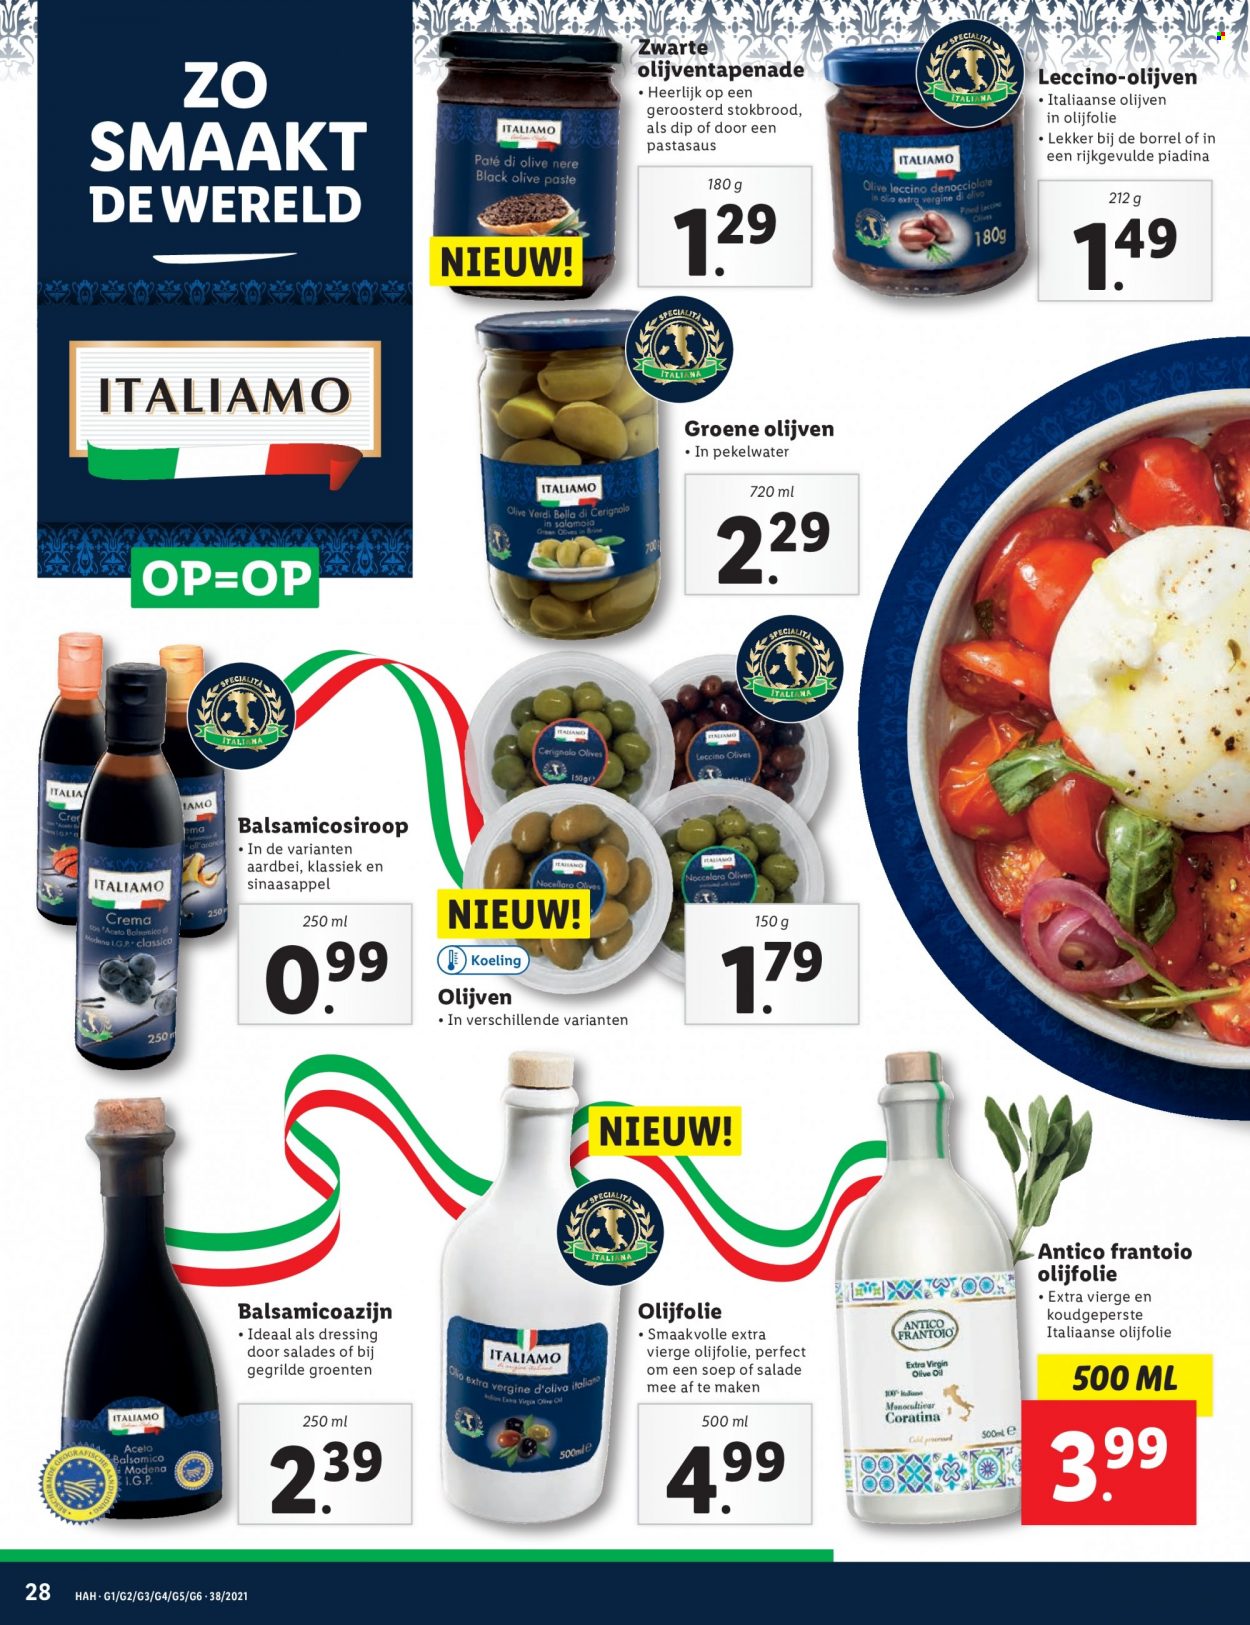 thumbnail - Lidl-aanbieding - 20-9-2021 - 26-9-2021 -  producten in de aanbieding - stokbrood, Italiamo, sinaasappels, groene olijven, olijven, balsamicoazijn, olijfolie. Pagina 28.